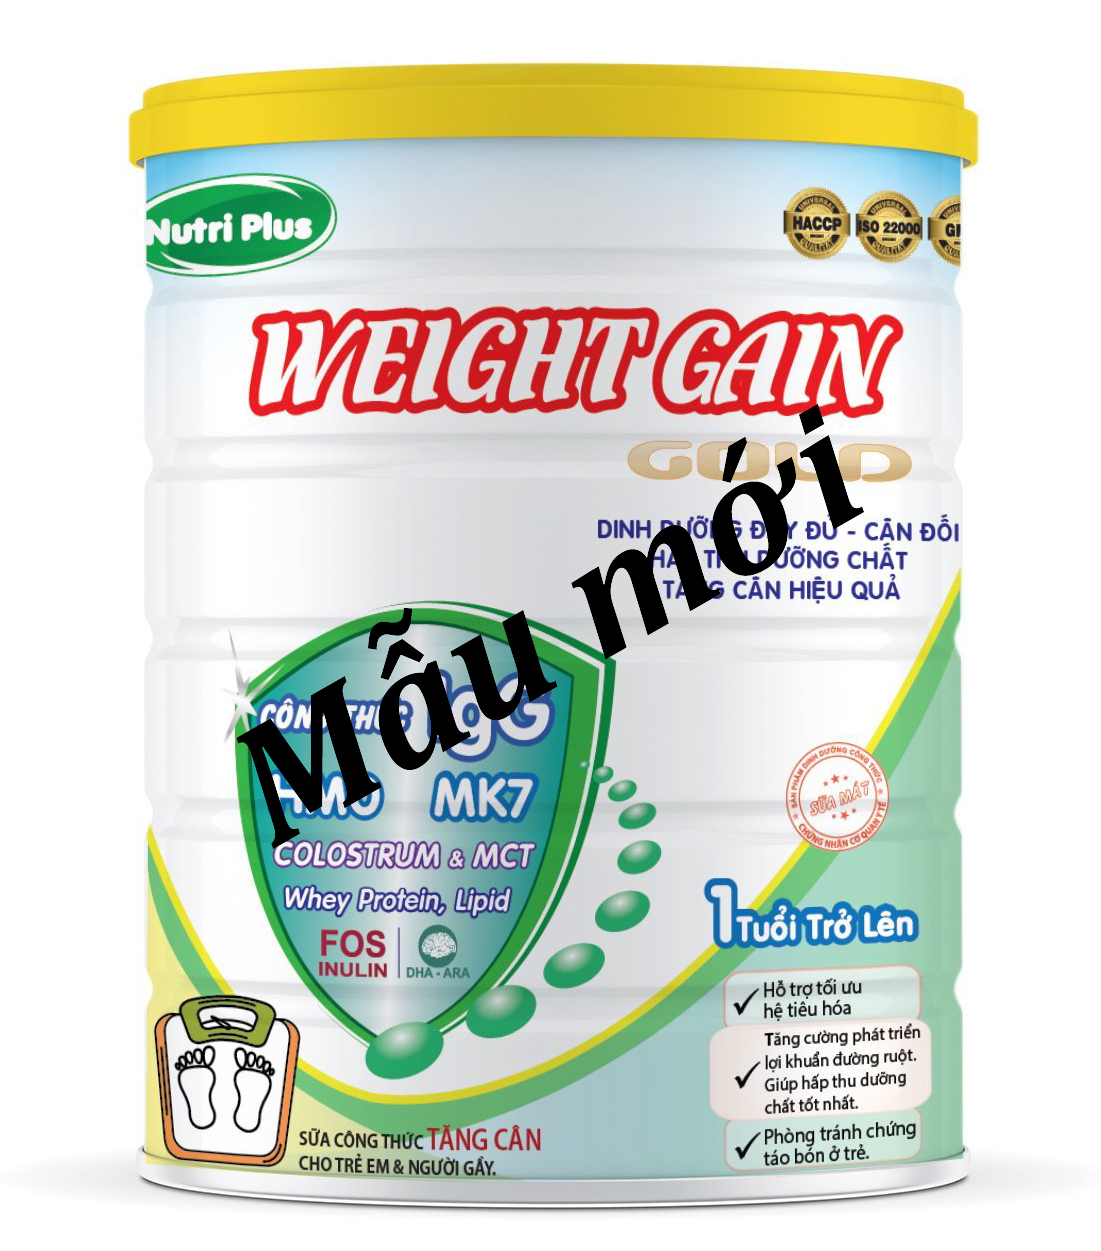 Sữa bột dinh dưỡng Nutri Plus Weight Gain dành cho người gầy, tăng cân hiệu quả Sunbaby NTSBTH2019